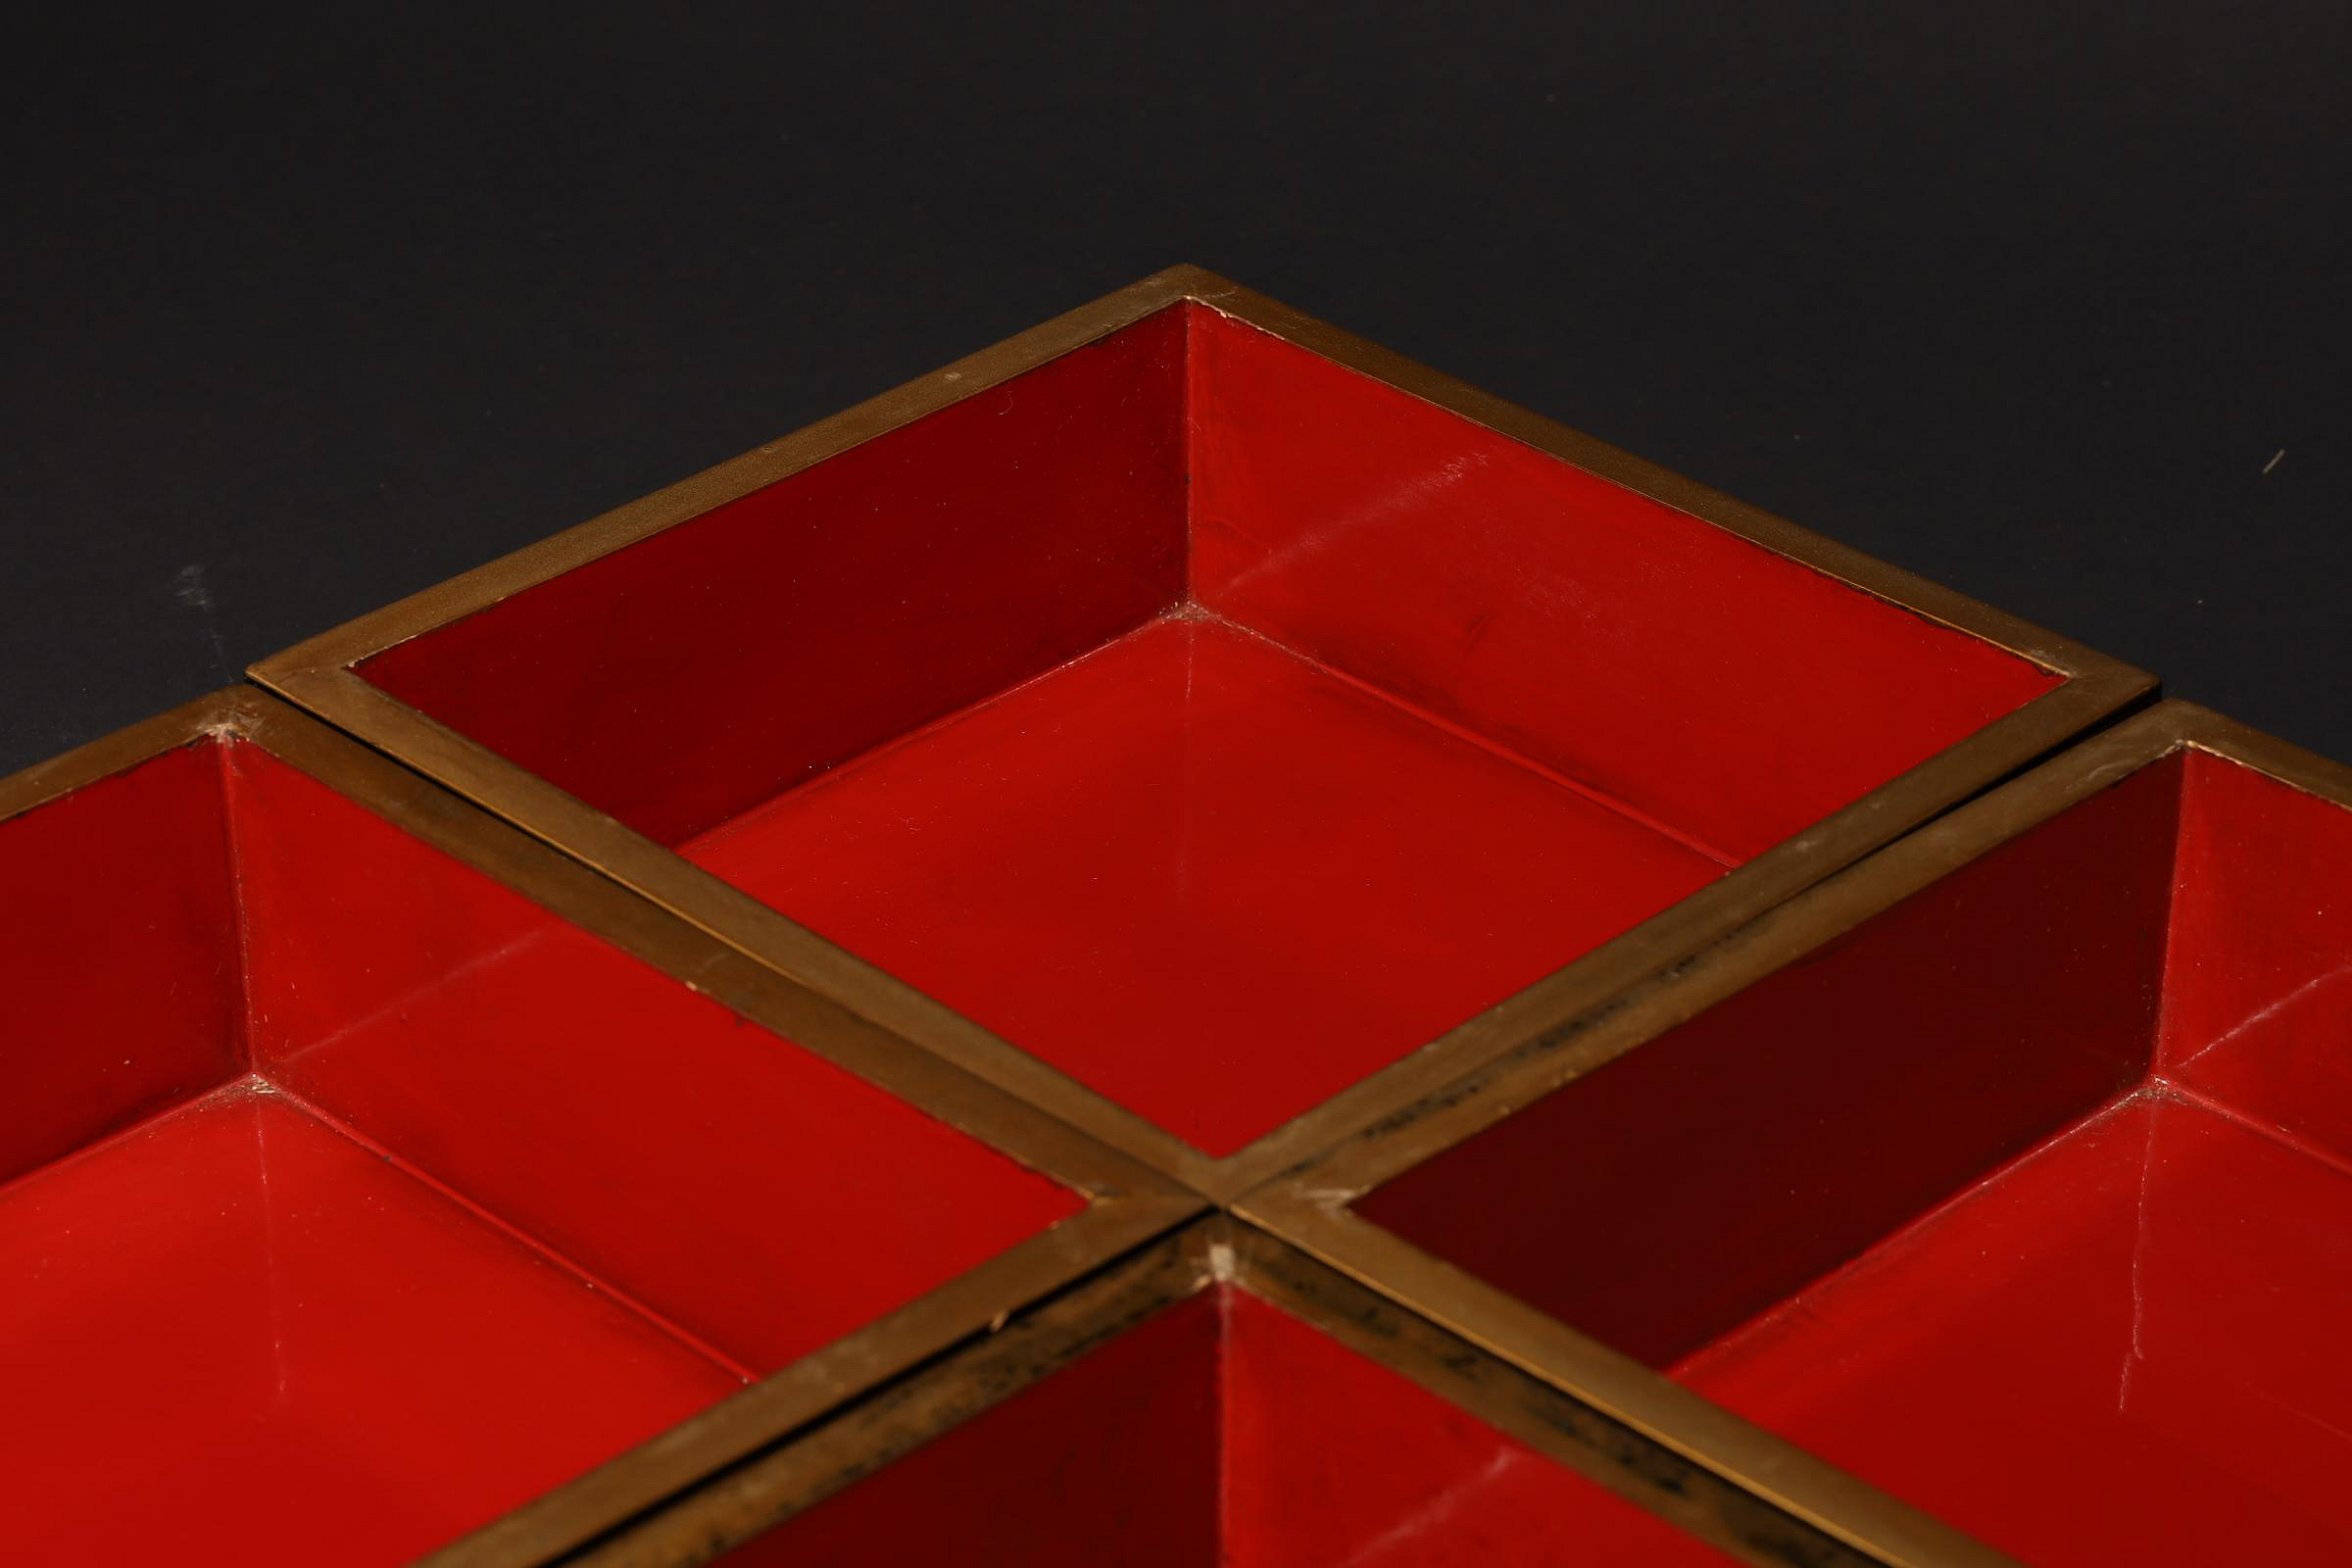 2/29結標木胎漆器蒔繪重箱茶餅盒B020924 –漆碗漆盤漆盒茶箱重箱承盤 